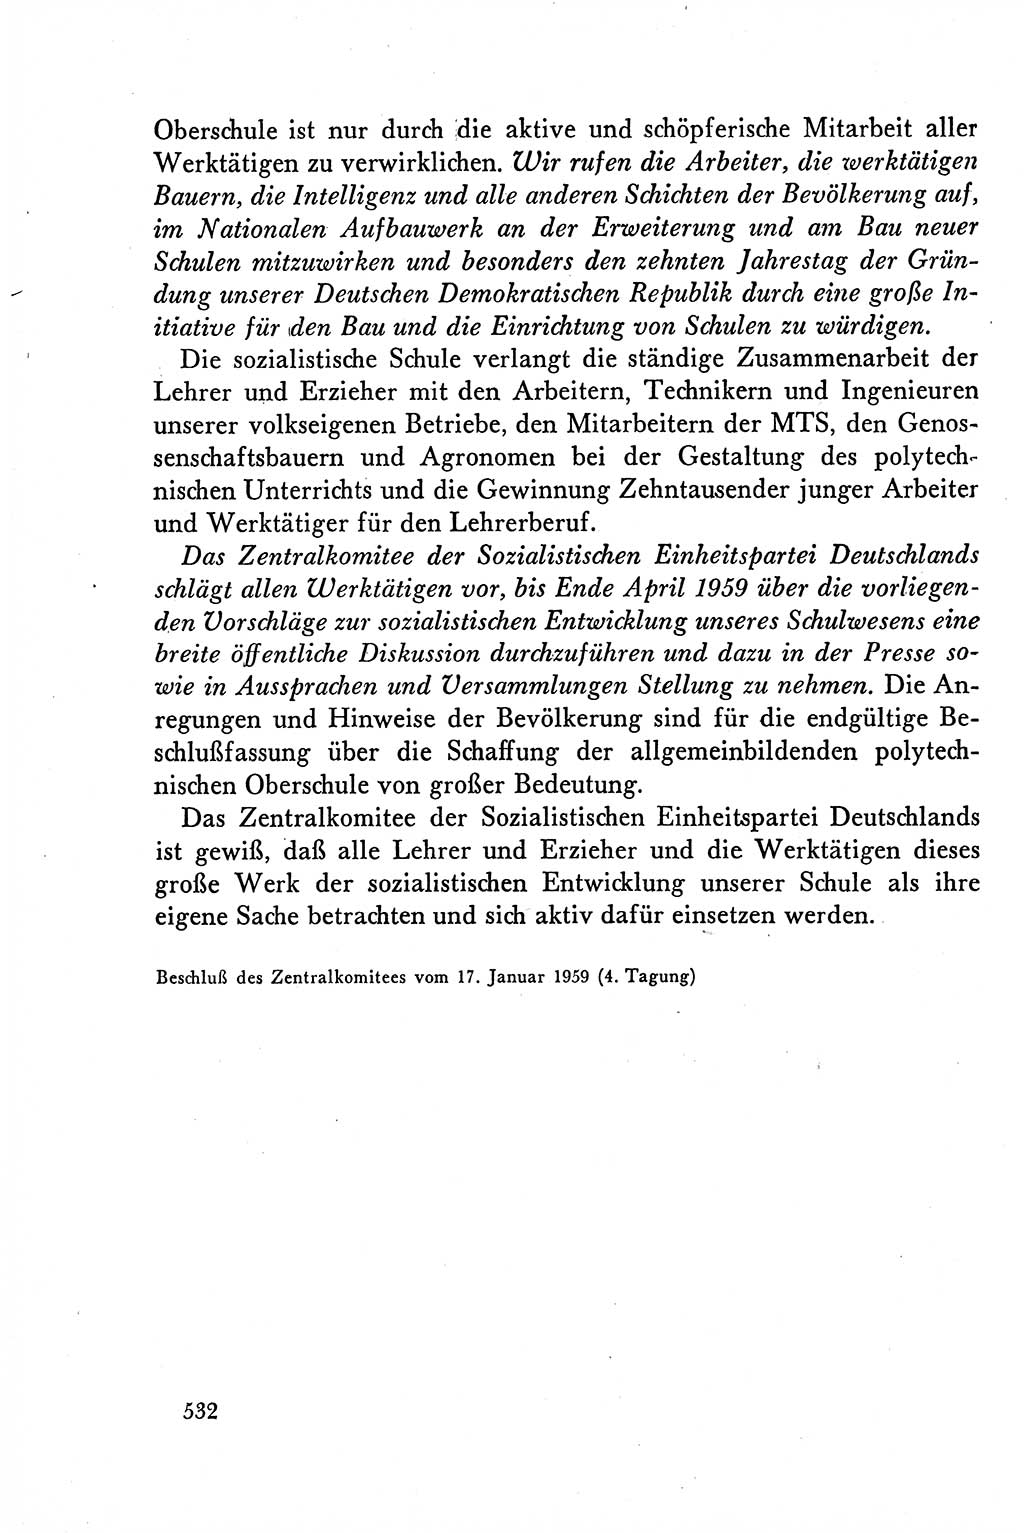 Dokumente der Sozialistischen Einheitspartei Deutschlands (SED) [Deutsche Demokratische Republik (DDR)] 1958-1959, Seite 532 (Dok. SED DDR 1958-1959, S. 532)